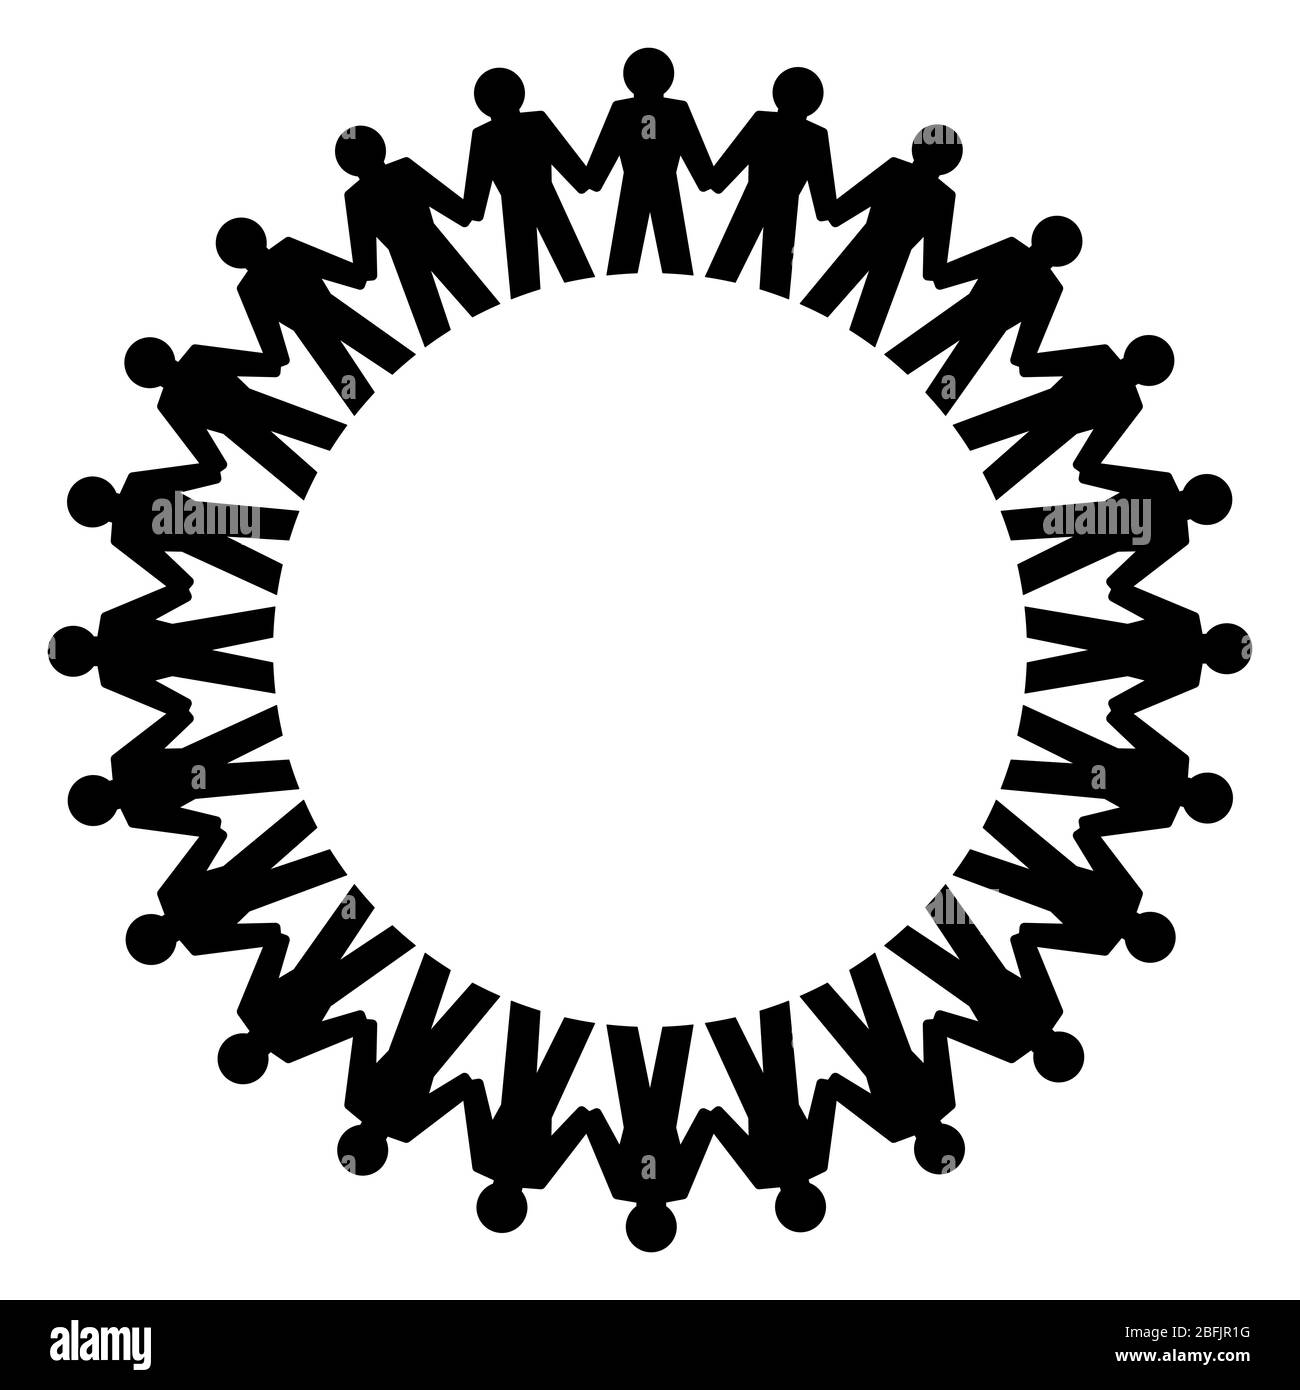 Persone che tengono le mani e si trovano in un grande cerchio. Simbolo astratto di persone collegate che formano un cerchio per esprimere amicizia, amore e armonia. Foto Stock